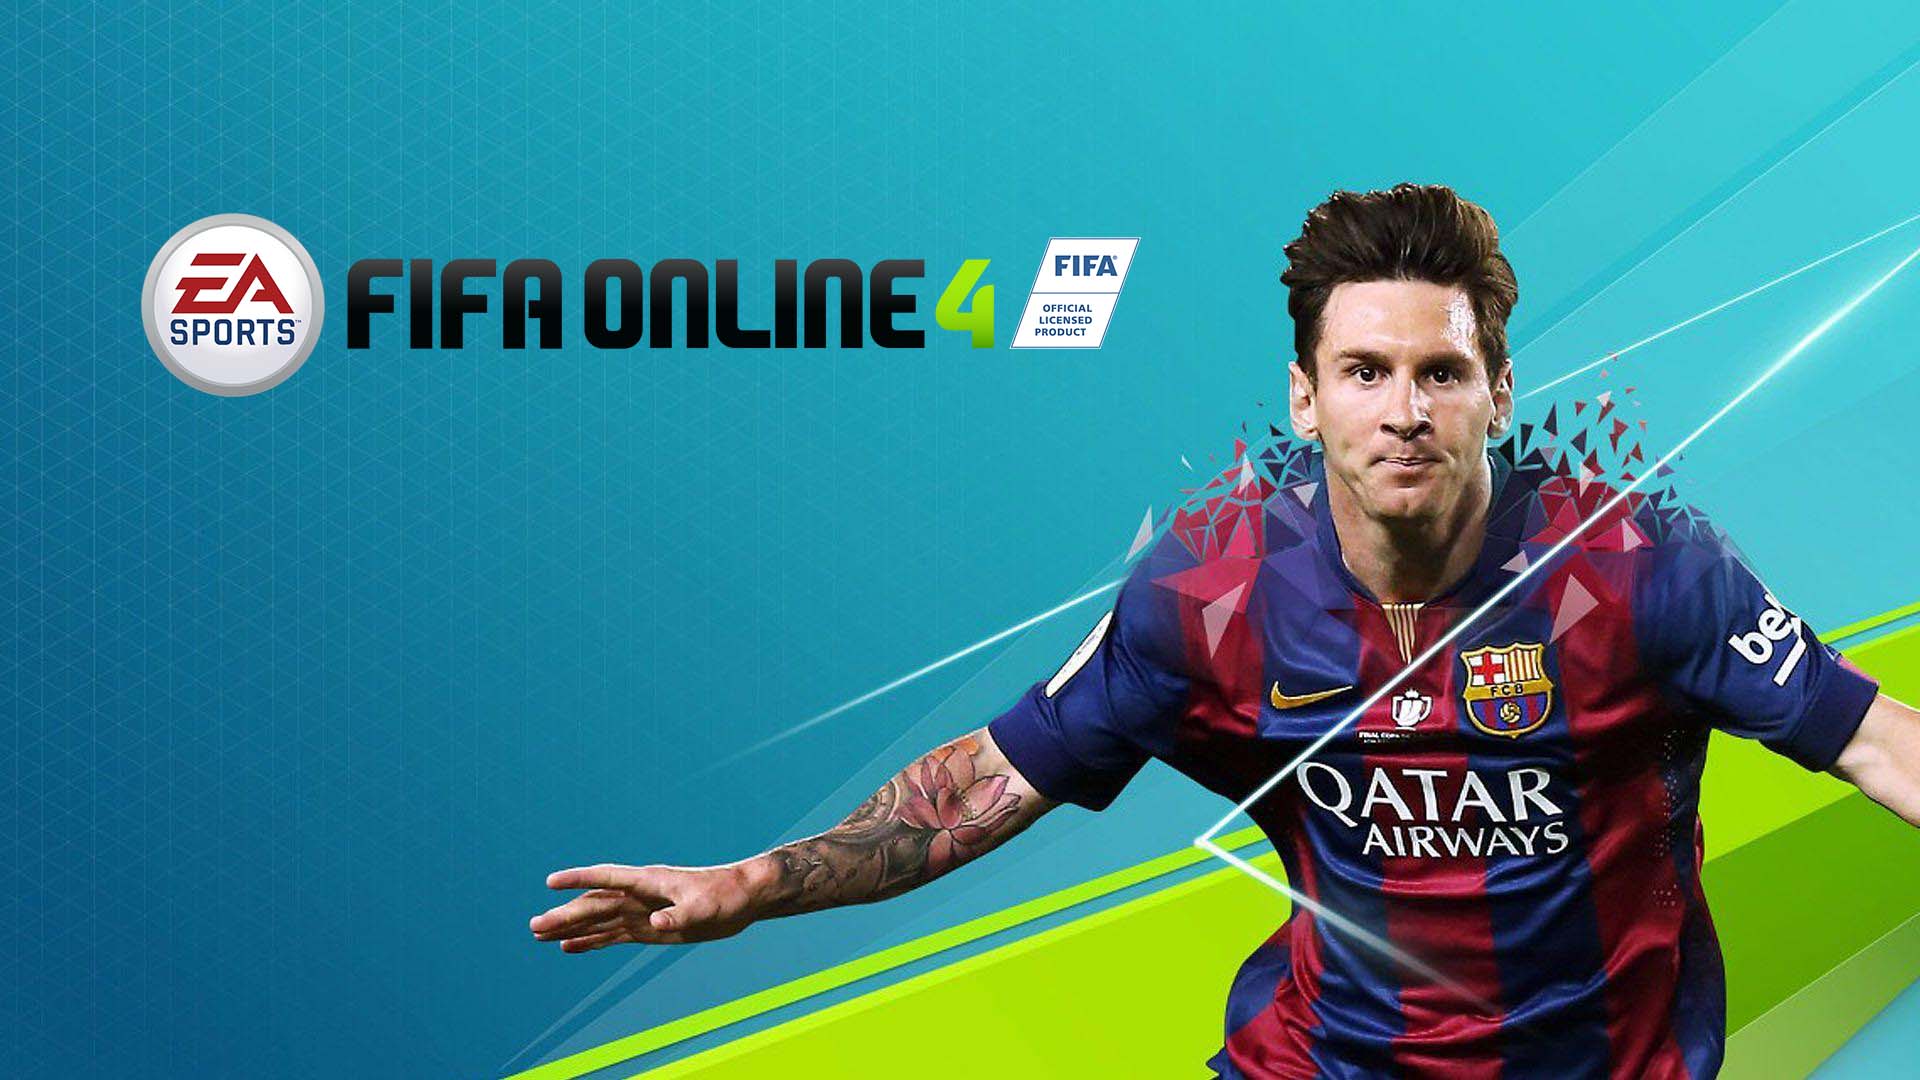 Nếu bạn là fan của Fifa Online 4, thì chắc chắn bạn không muốn bỏ lỡ cơ hội được thưởng thức các hình ảnh đẹp lung linh với tay cầm PS4, DS4 hay PC thật chân thật, sống động. Tham gia ngay để trải nghiệm cảm giác như đang ngồi trên sân cỏ!